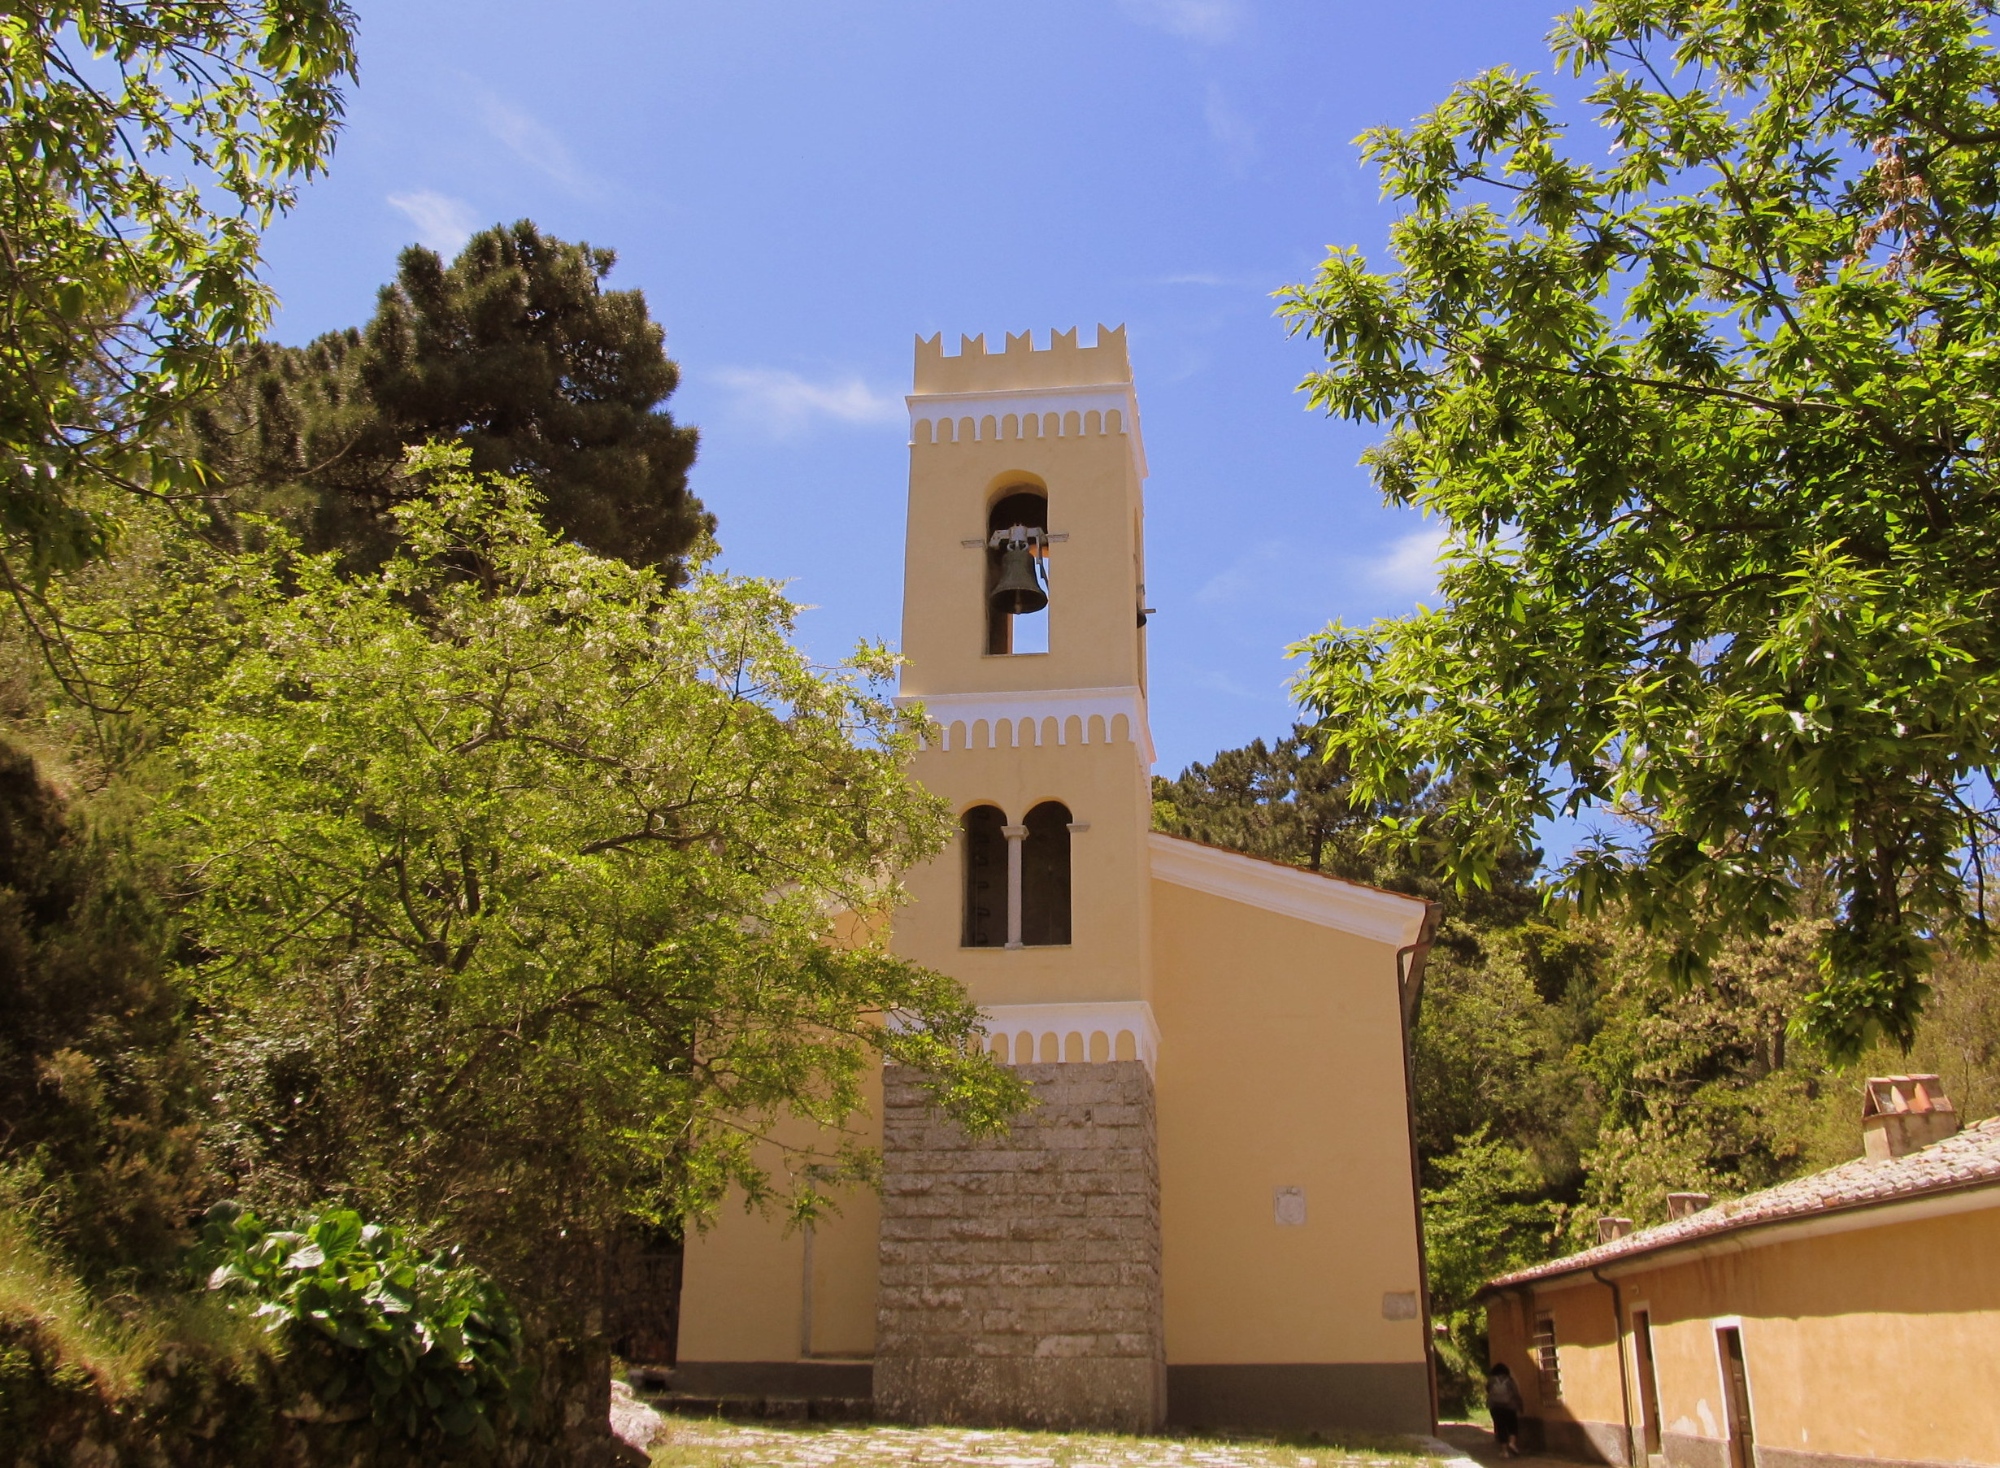 Sanctuary of the Madonna del Monte